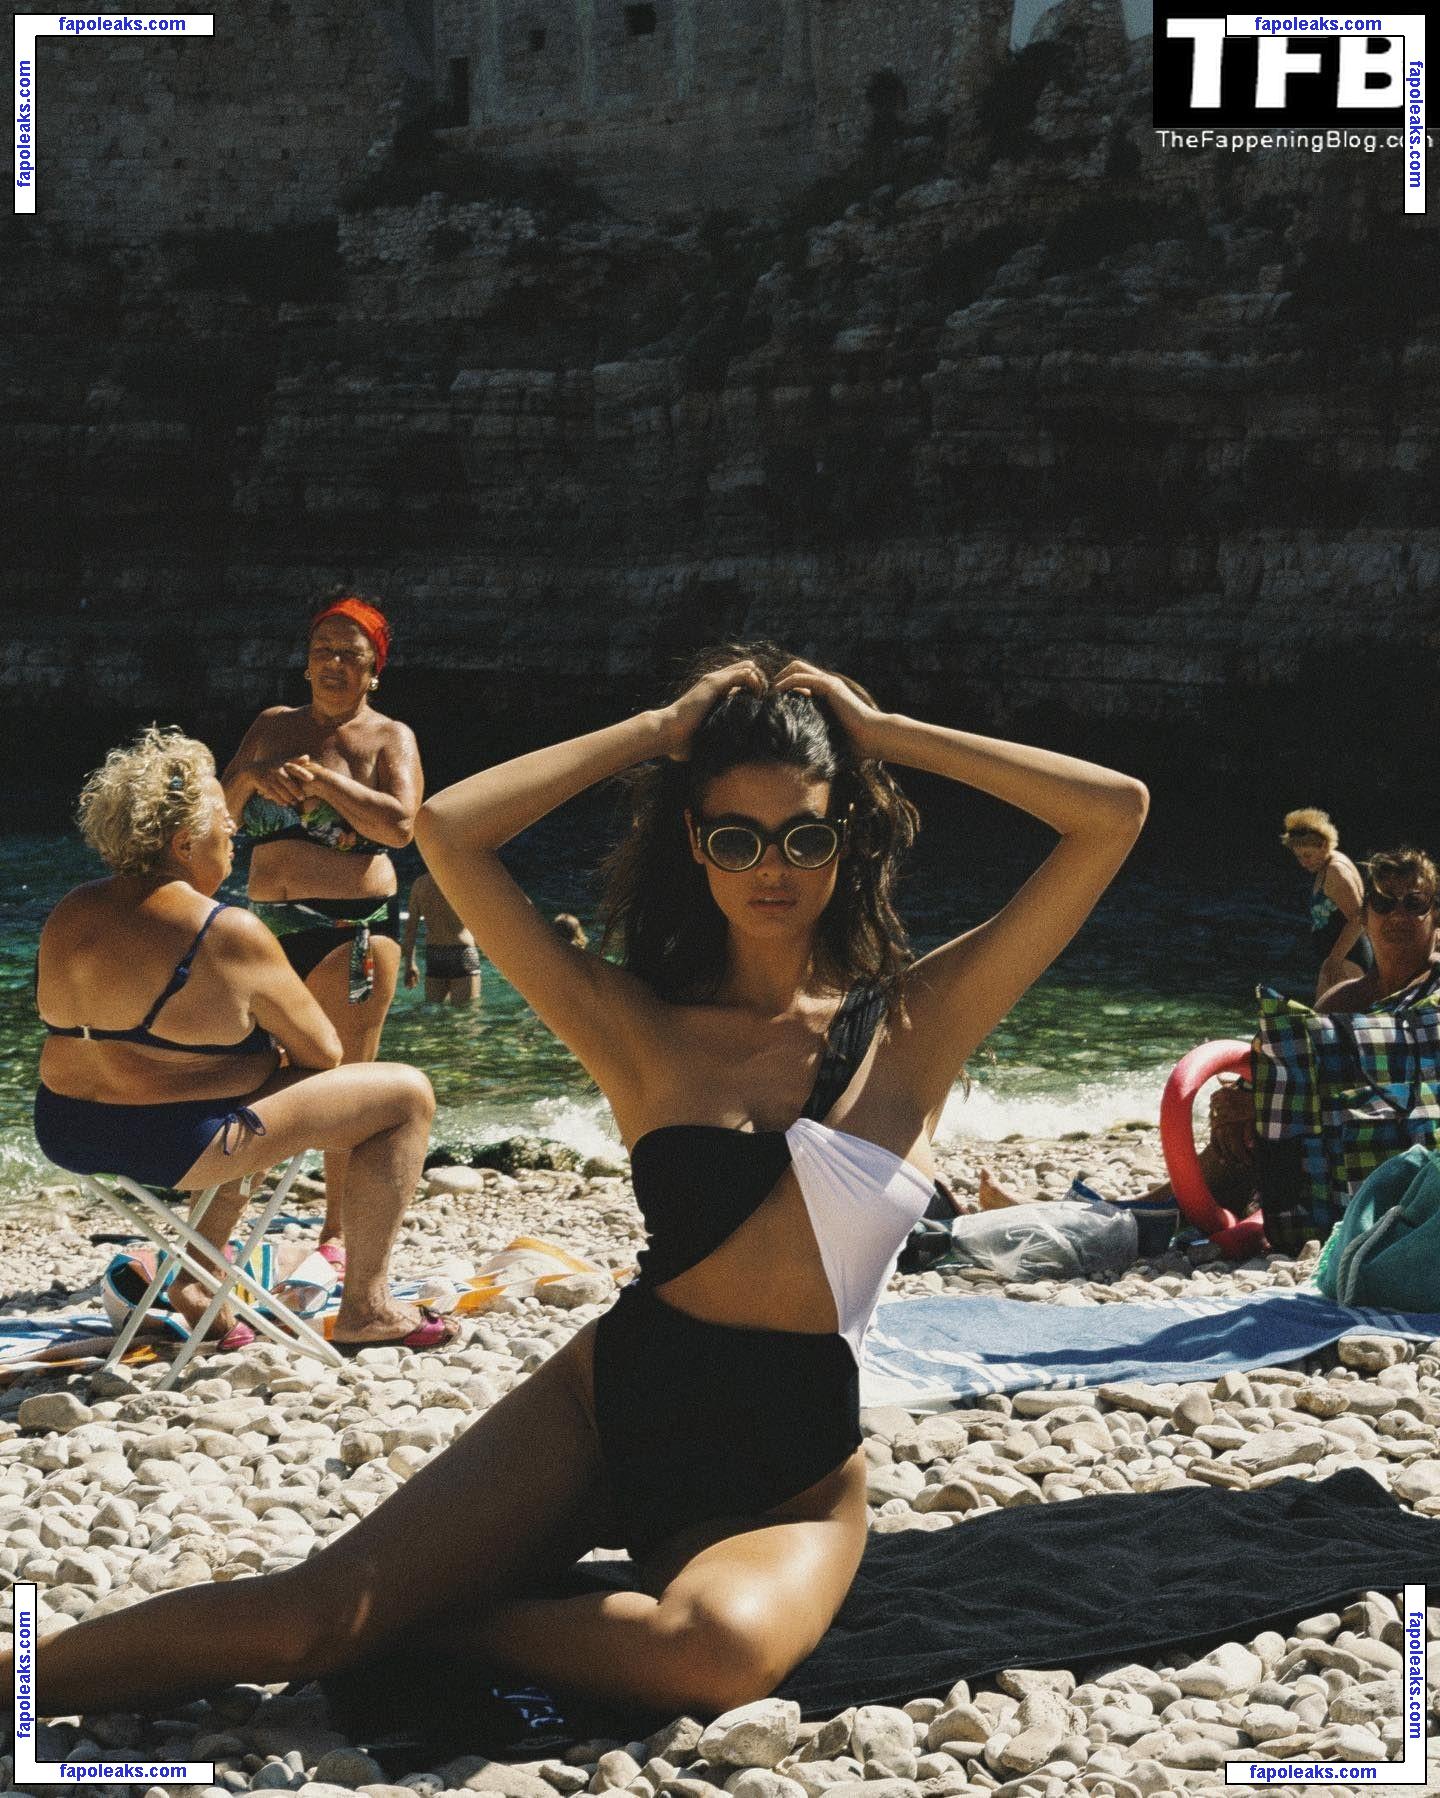 Bojana Krsmanovic nude photo #0211 from OnlyFans